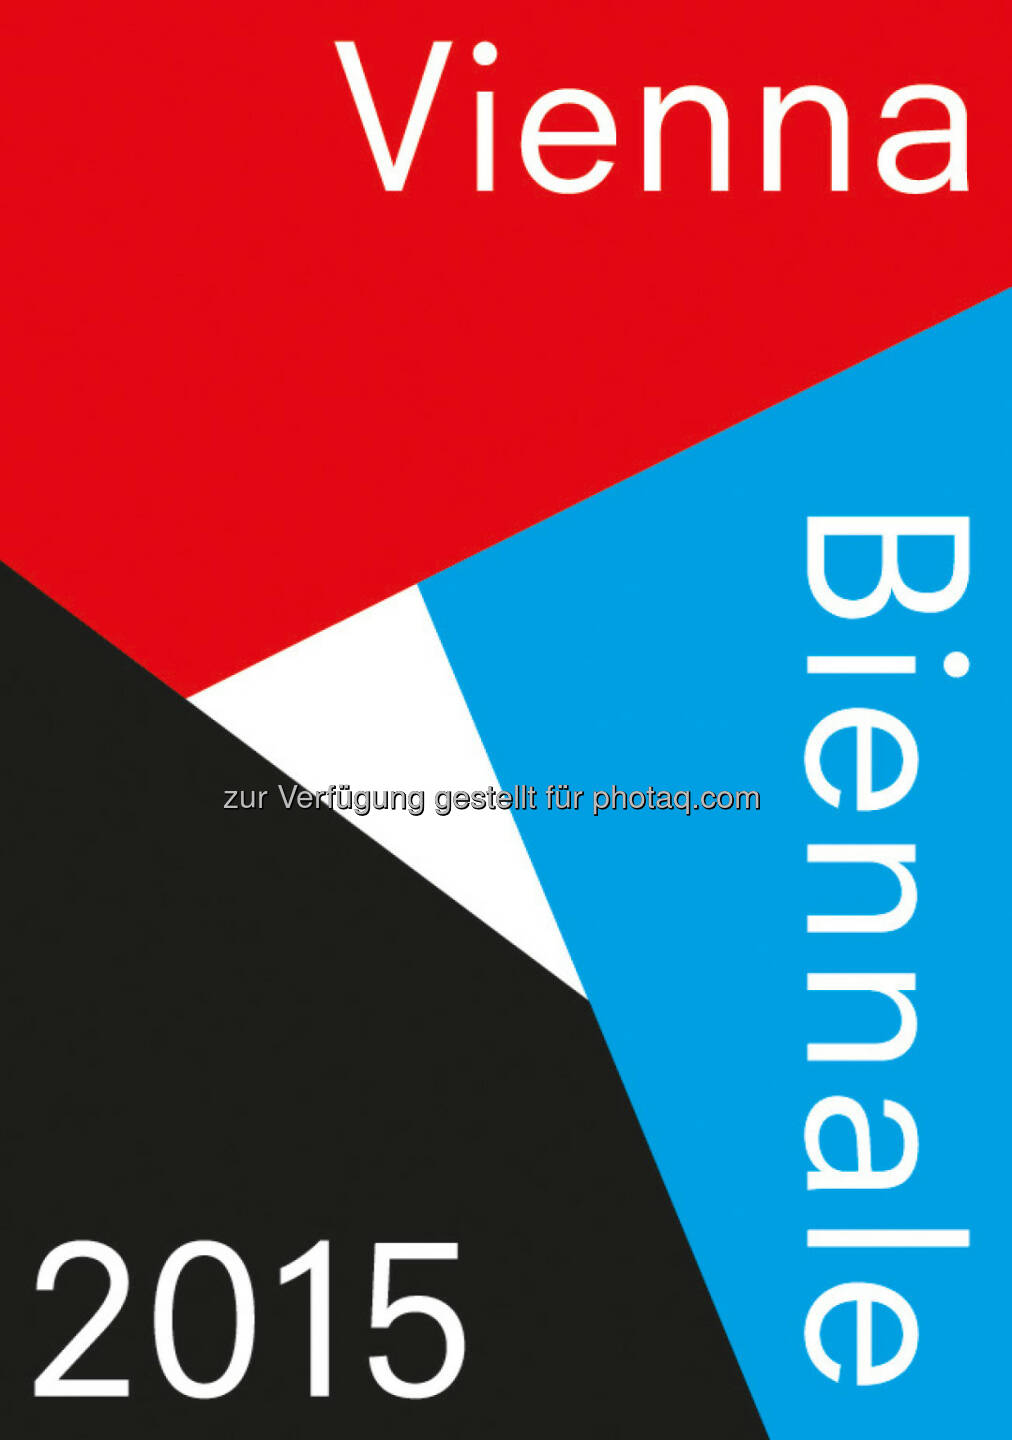 Logo Vienna Biennale 2015: Finissage der Vienna Biennale zugunsten von Flüchtlingen im MAK : Freier Eintritt zum Finale und Spendenaufruf : Das MAK verzichtet zur Finissage am 4. Oktober 2015 auf die Eintrittsgelder und bittet stattdessen in Zusammenarbeit mit der Caritas um Spenden für die Flüchtlingshilfe : Fotocredit: buero bauer